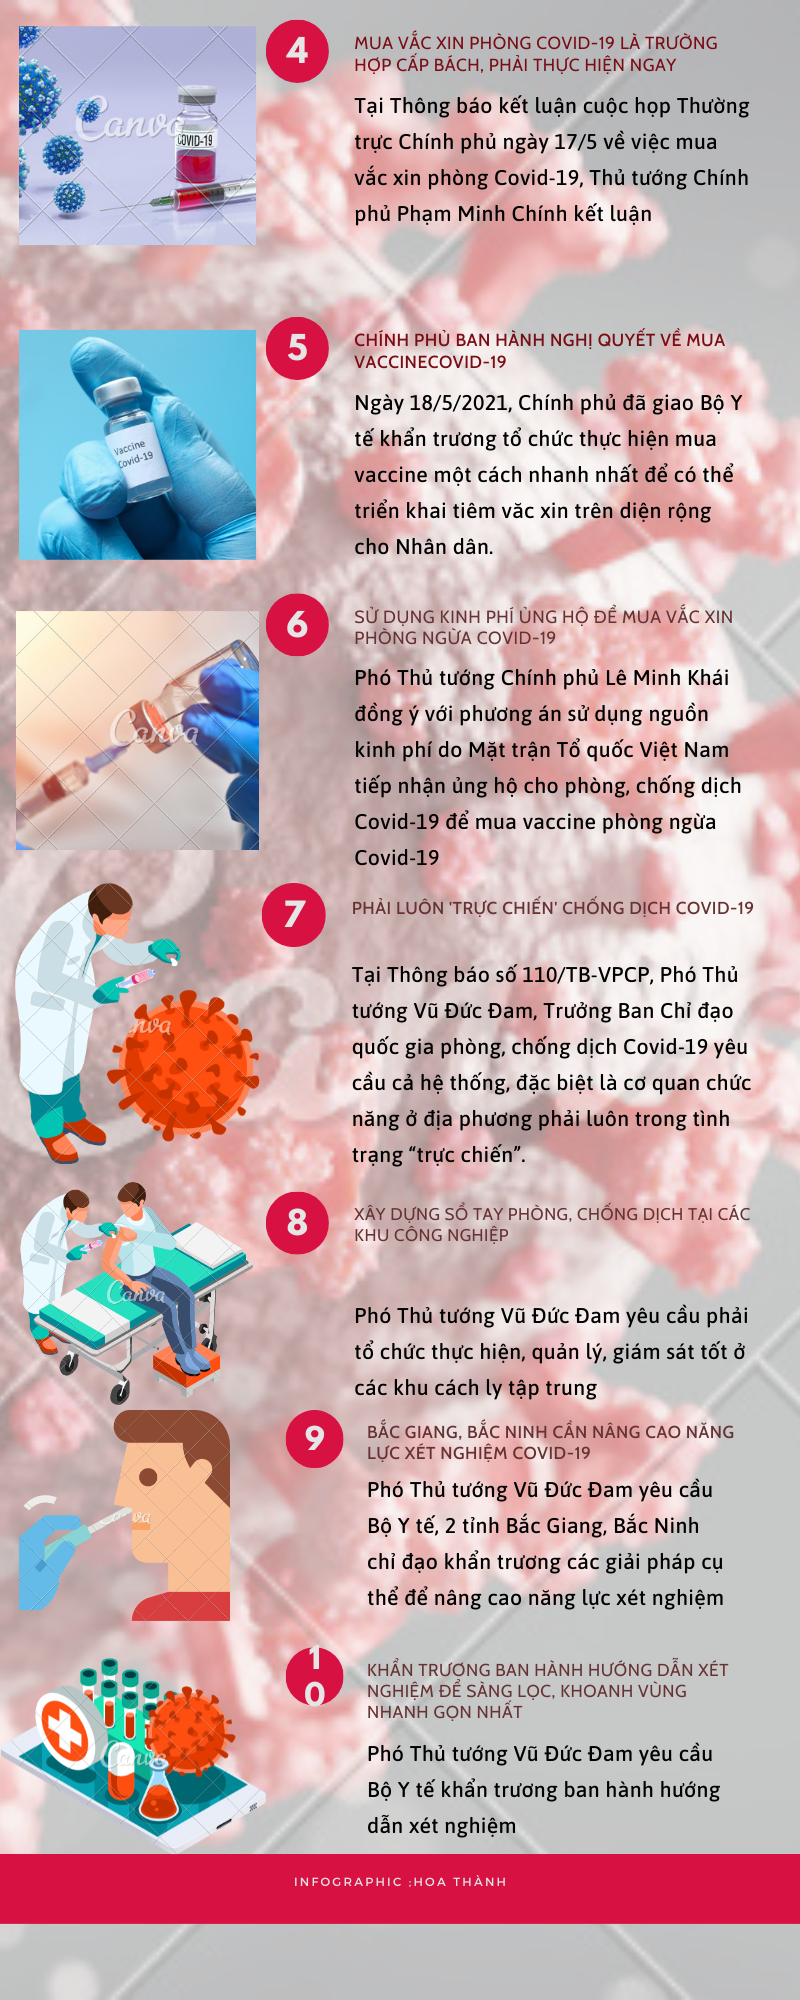 Infographic: Những chỉ đạo “nóng” trong phòng, chống dịch Covid-19